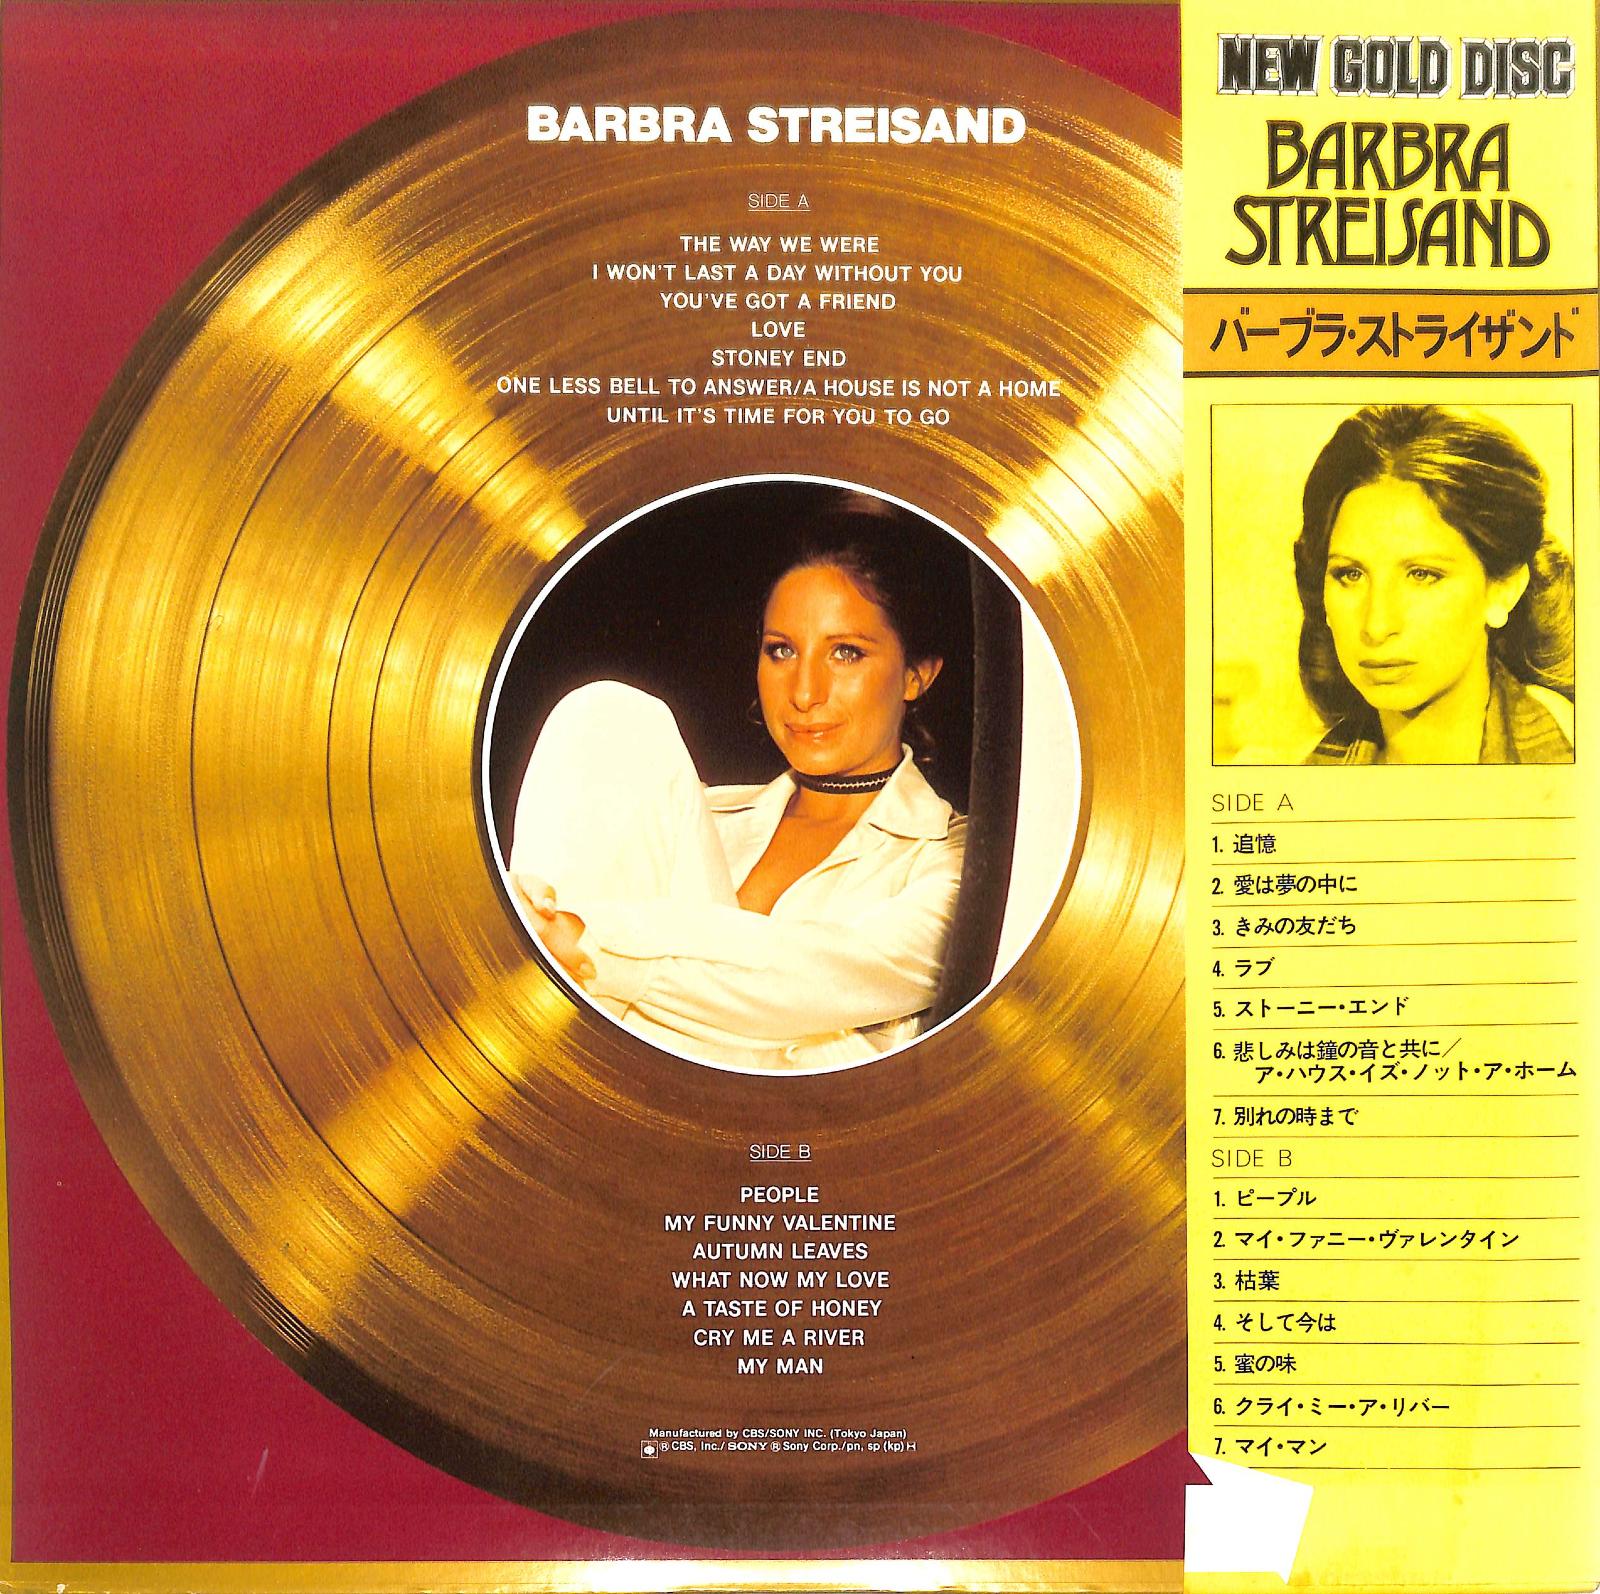 BARBRA STREISAND - New Gold Disc